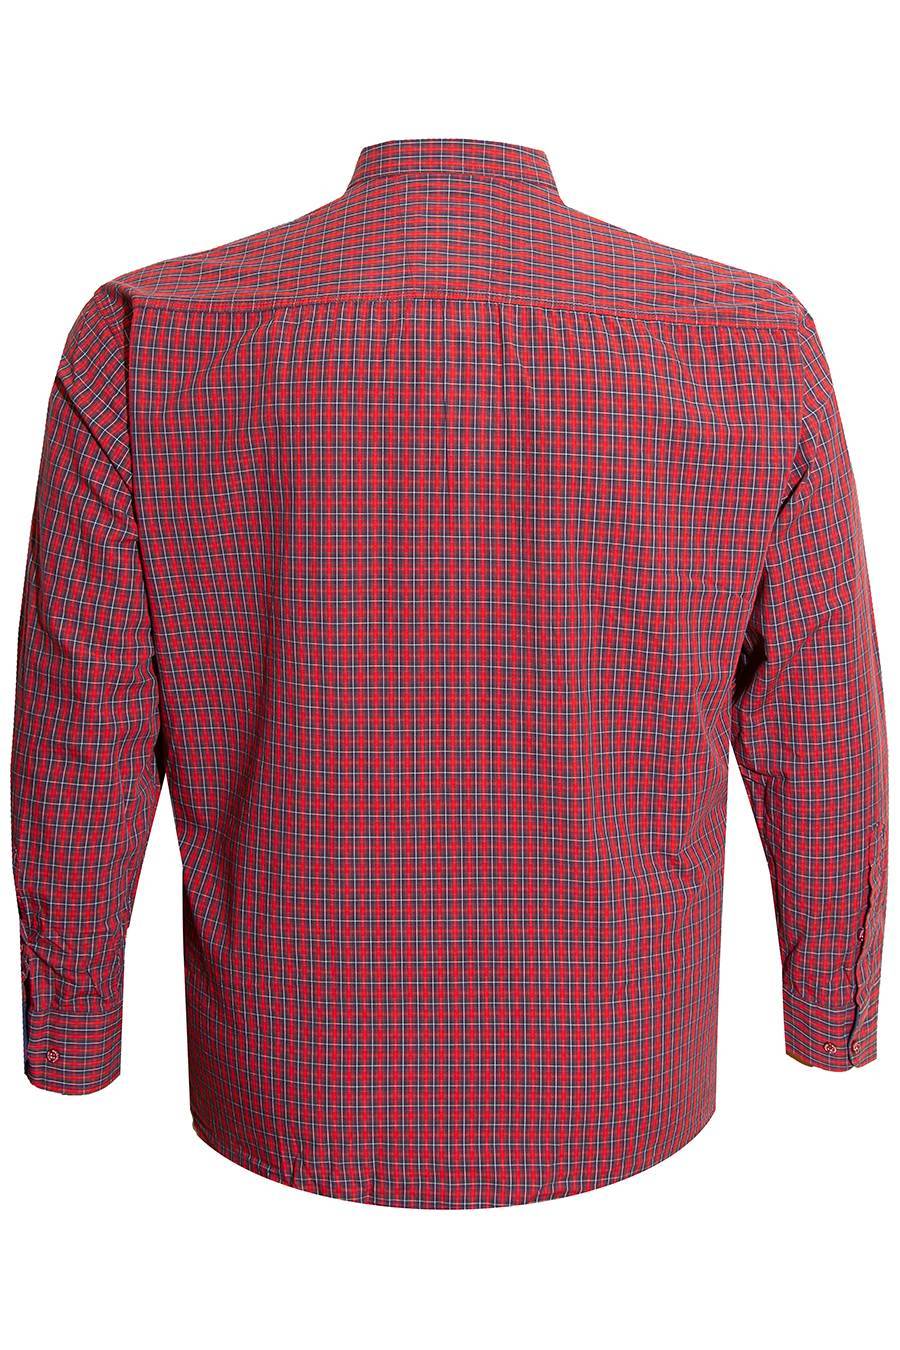 Рубашка Birindelly красная большого размера